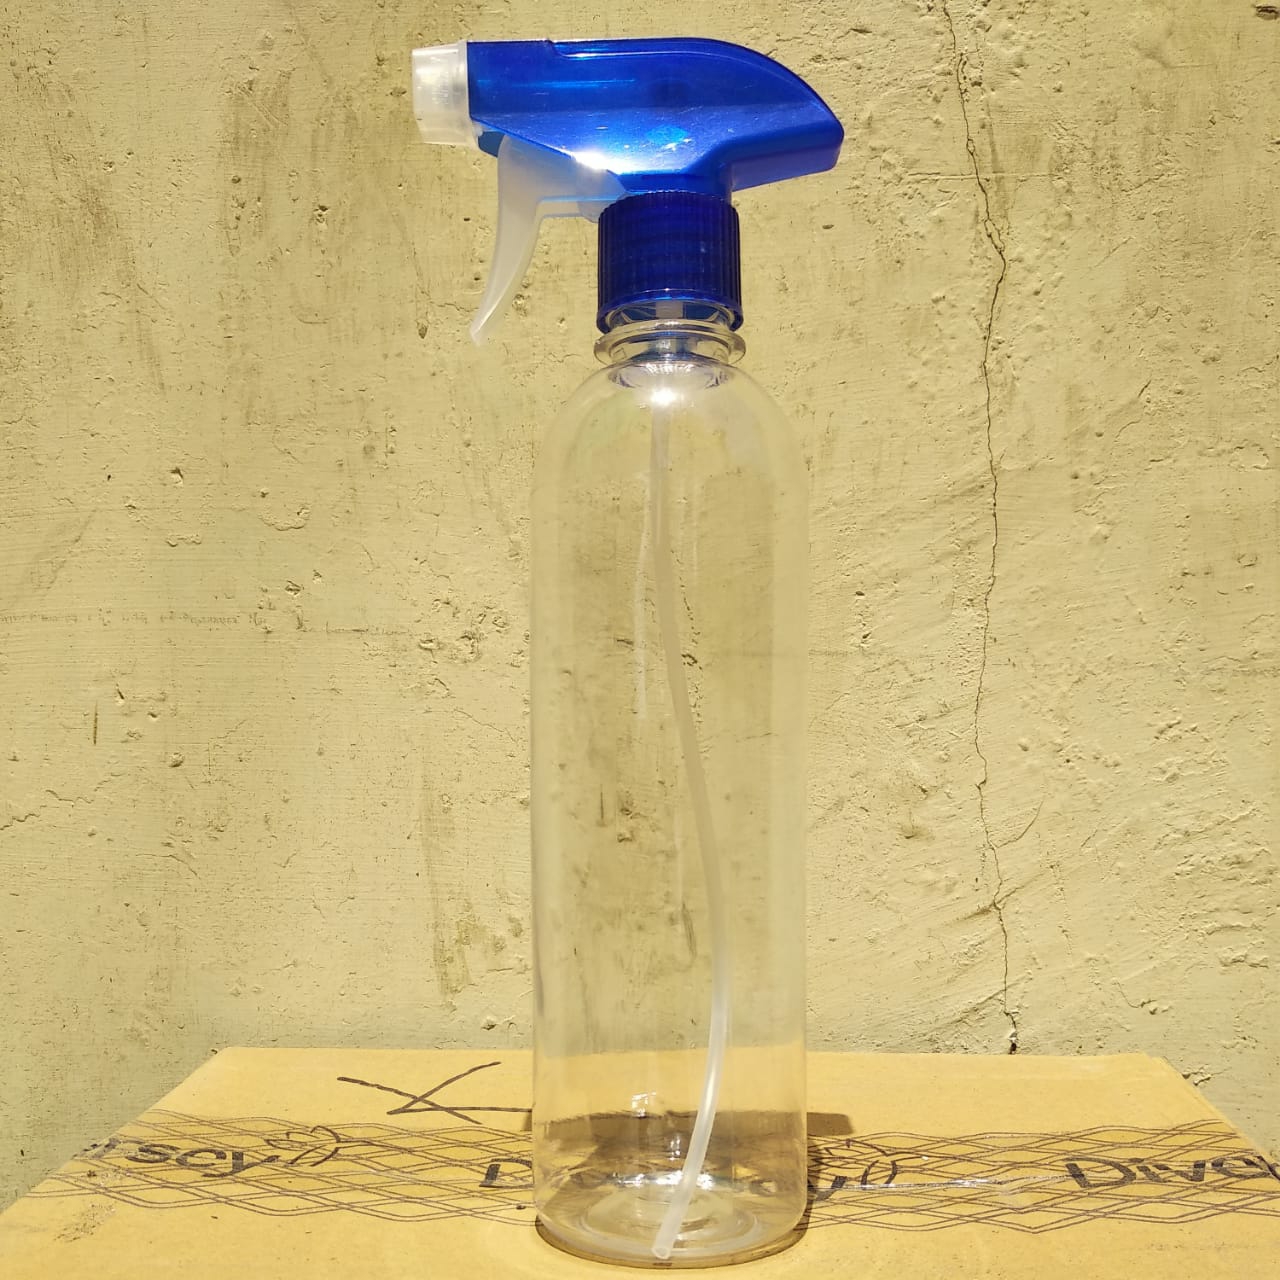 Empty Spray Pump Bottle 500ml